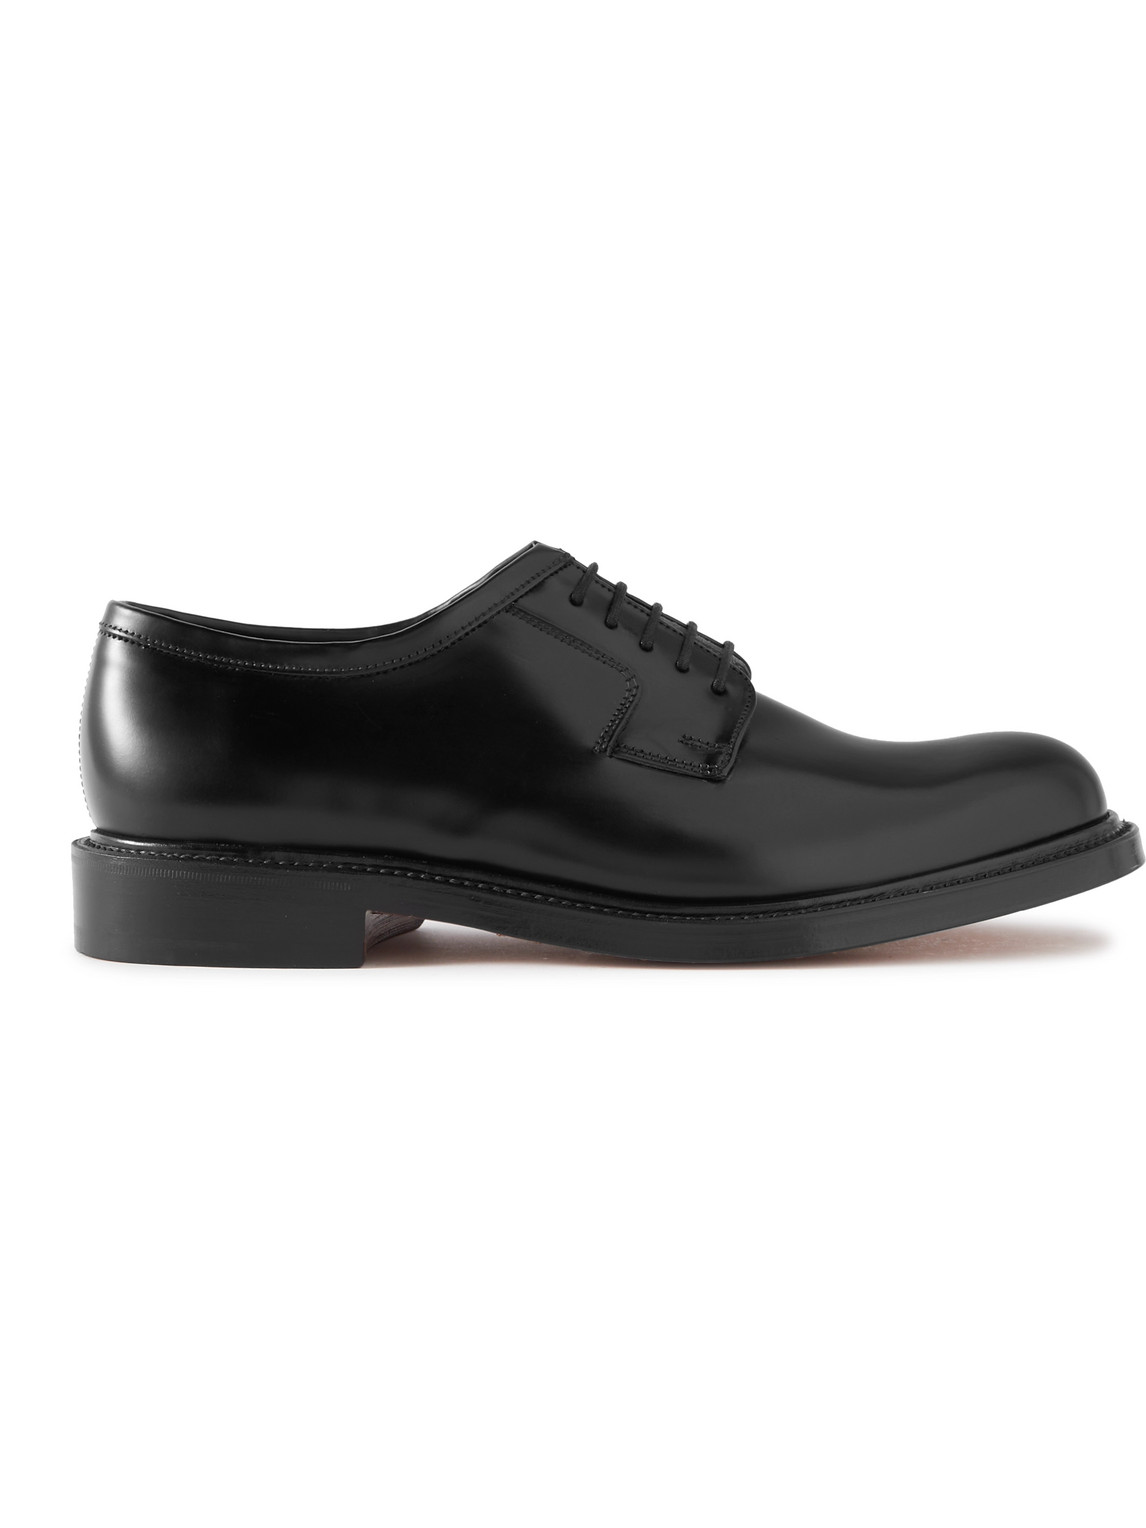 Grenson - Camden Leather Derby Shoes - Men - Black - UK 10 von Grenson